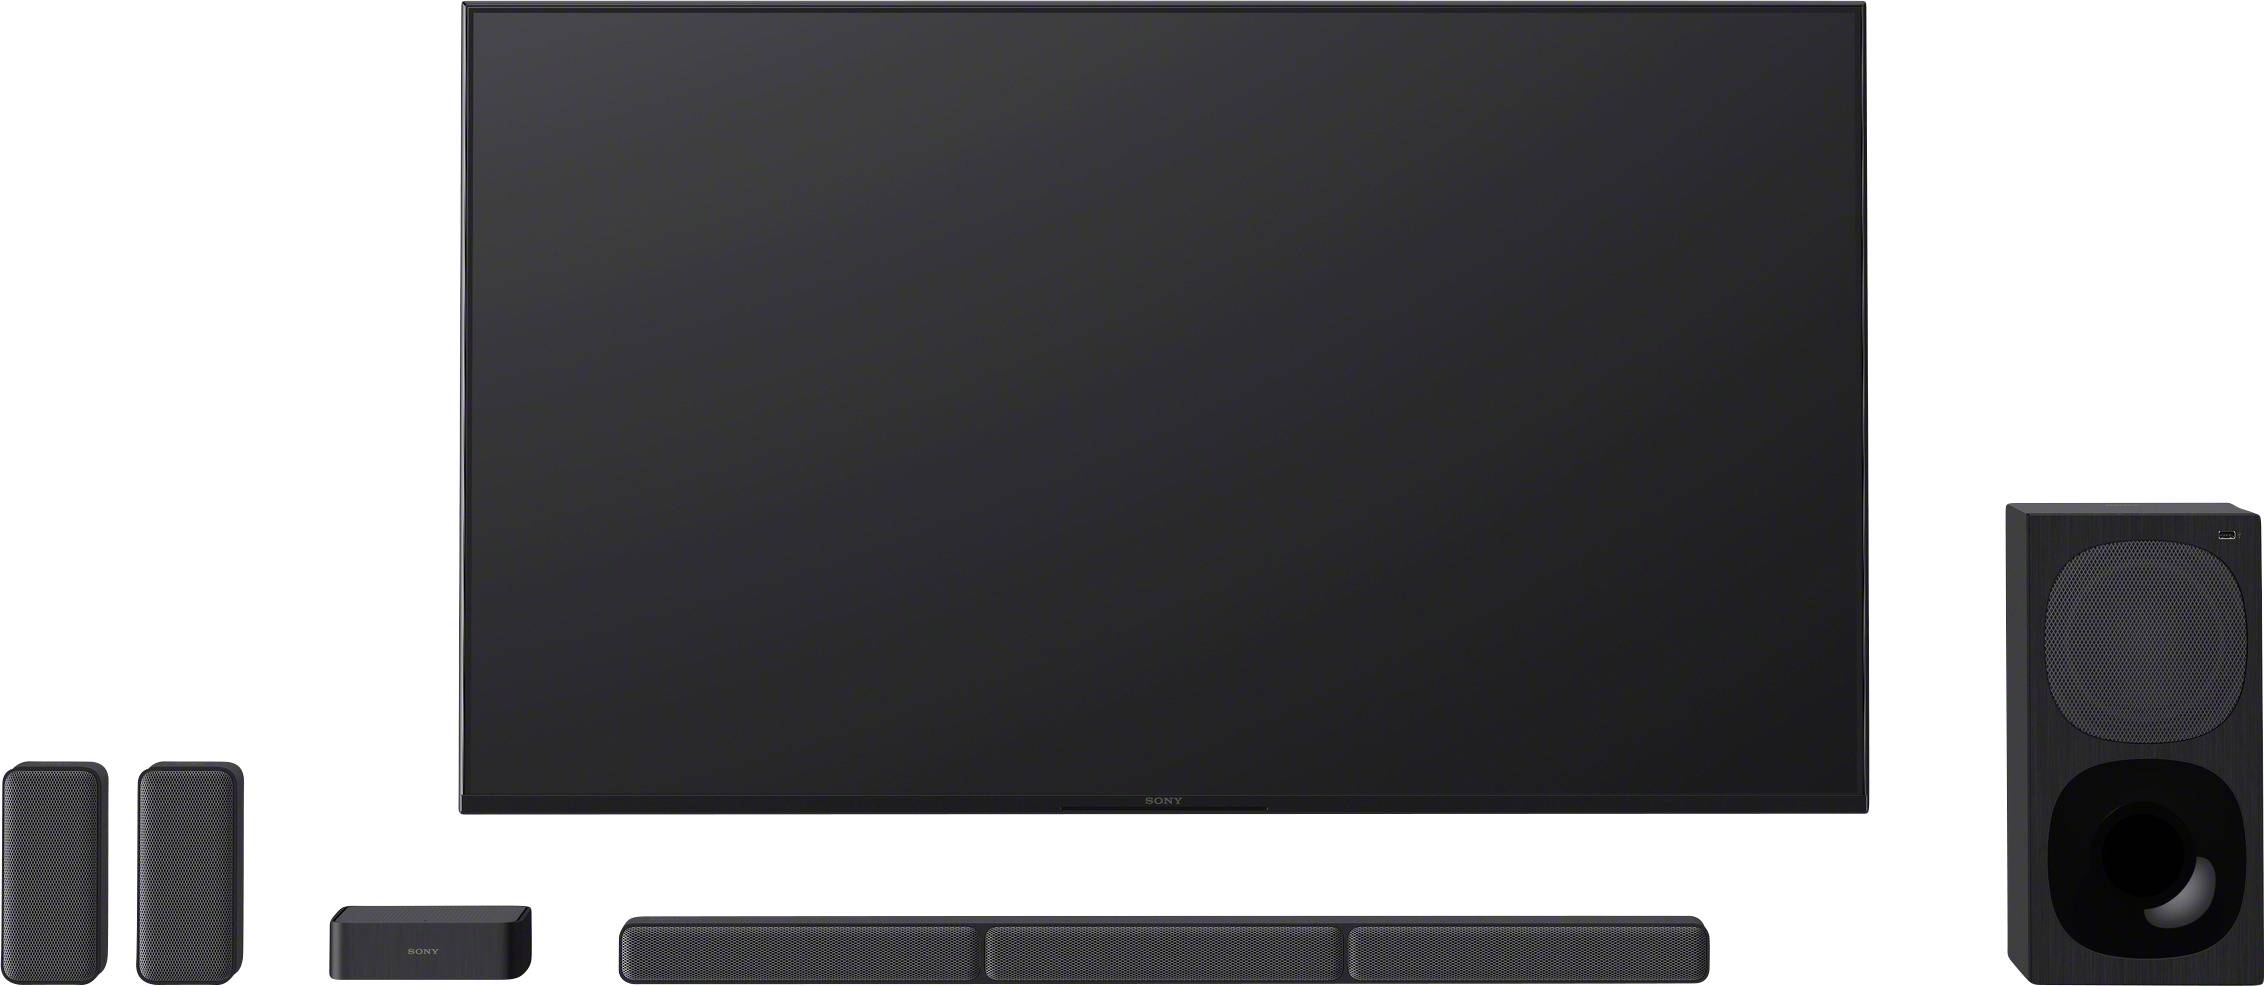 Afvigelse røveri Sædvanlig Sony HT-S40R Soundbar Black incl. corded subwoofer, Bluetooth, USB |  Conrad.com